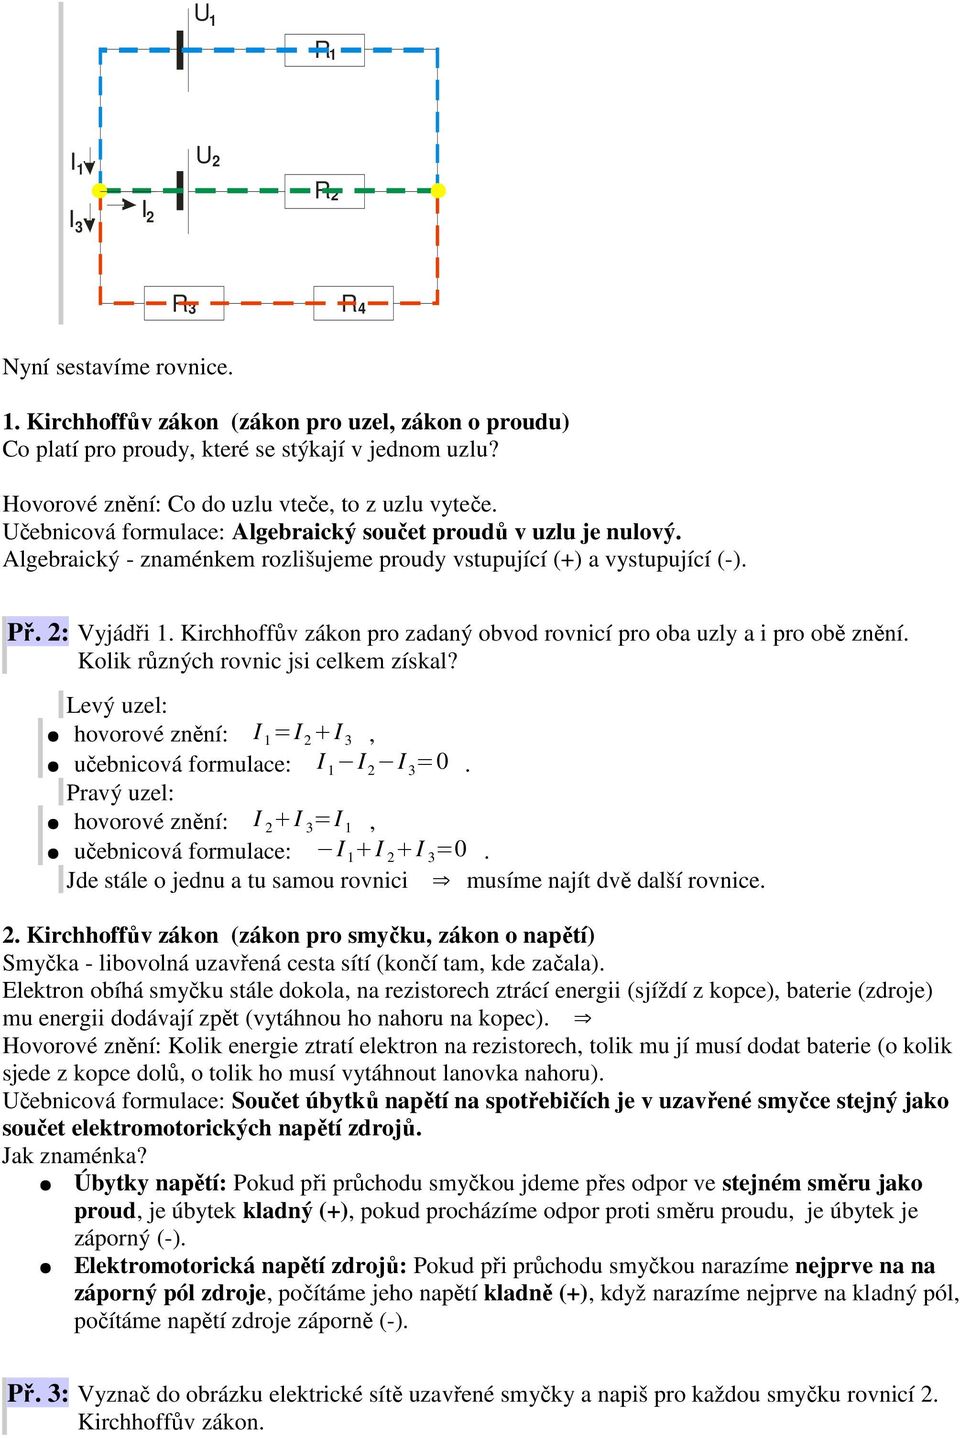 Kirchhoffův zákon pro zadaný obvod rovnicí pro oba uzly a i pro obě znění. Kolik různých rovnic jsi celkem získal? Levý uzel: hovorové znění: =, učebnicová formulace: =0.